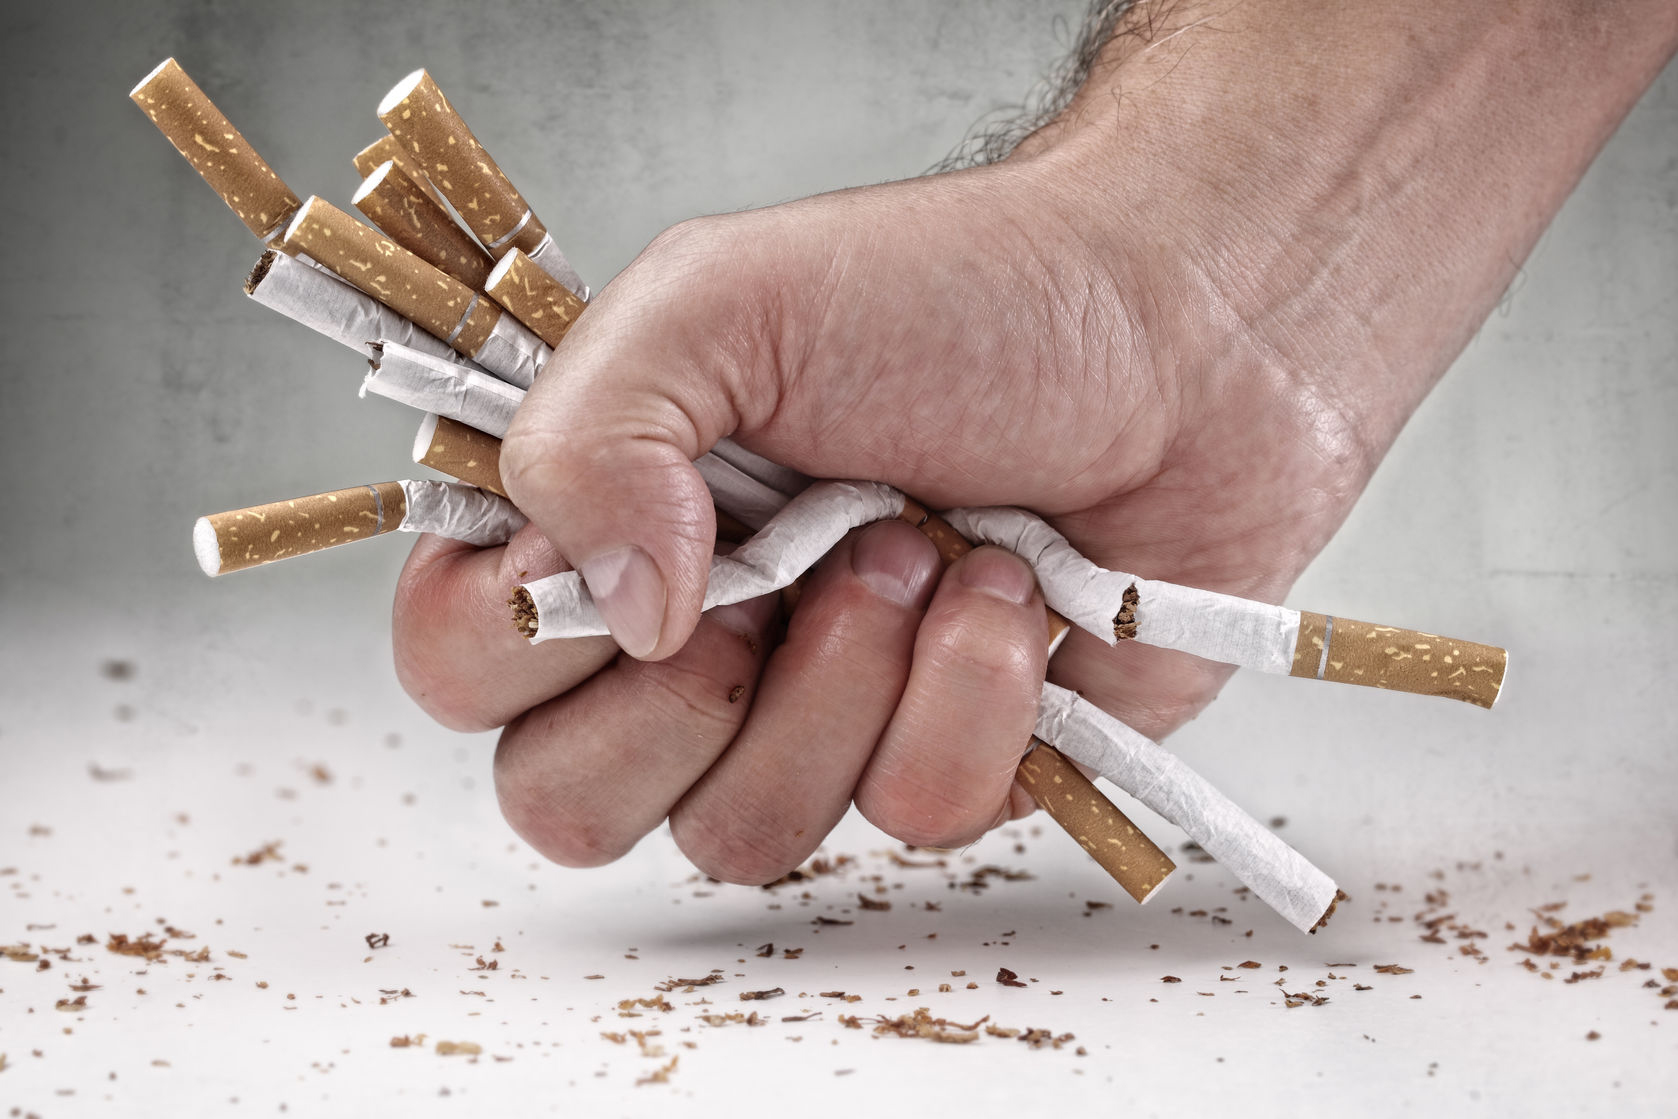 9 Şubat Dünya Sigarayı Bırakma Günü: Sigarayı hemen bırakmak için 10 neden